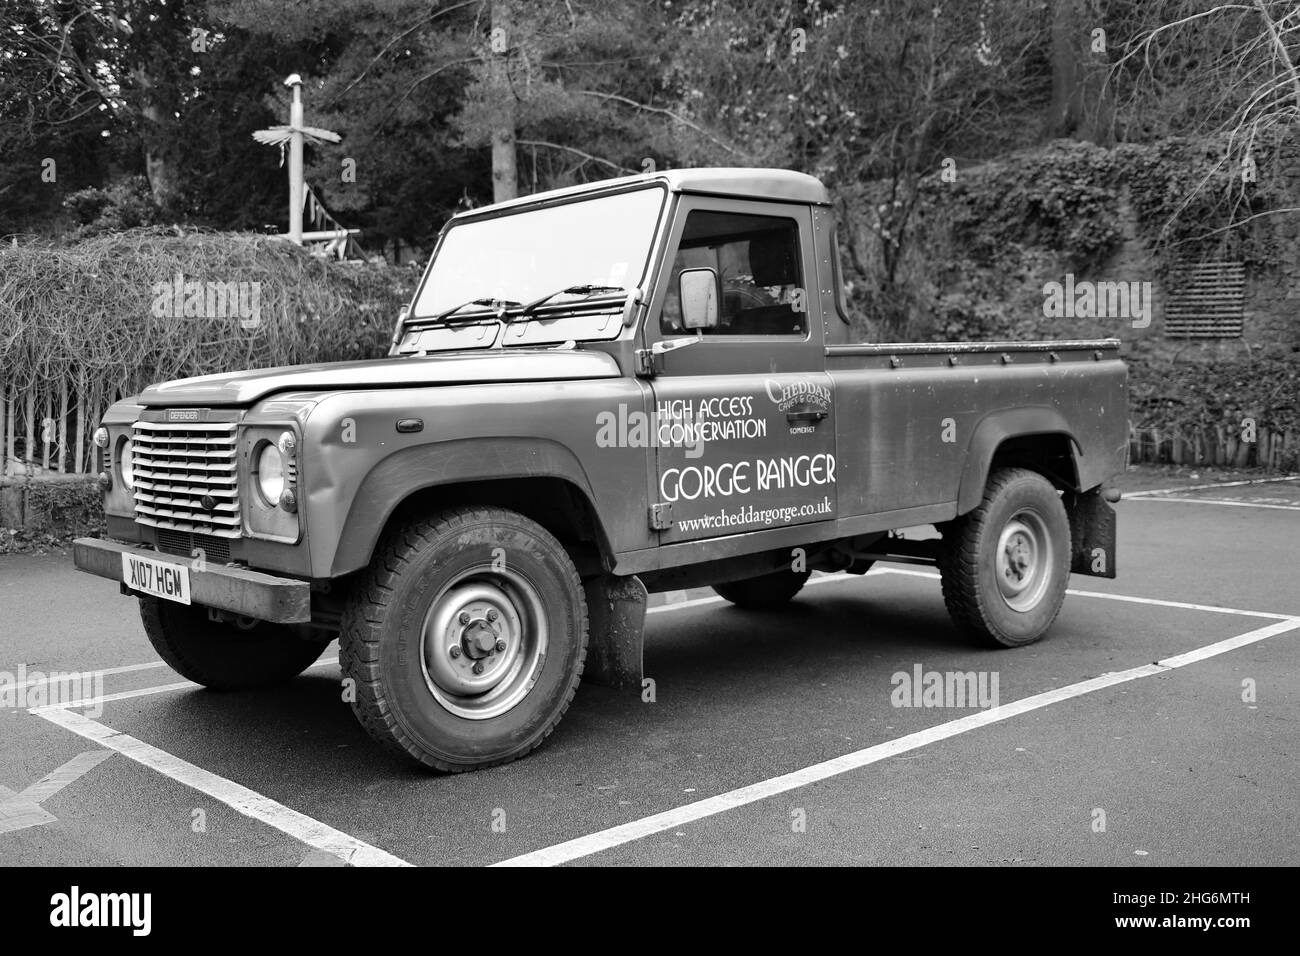 Janvier 2022 - un cheval de travail Land Rover de 20 ans à Cheddar, Somerset, Angleterre, Royaume-Uni. Banque D'Images